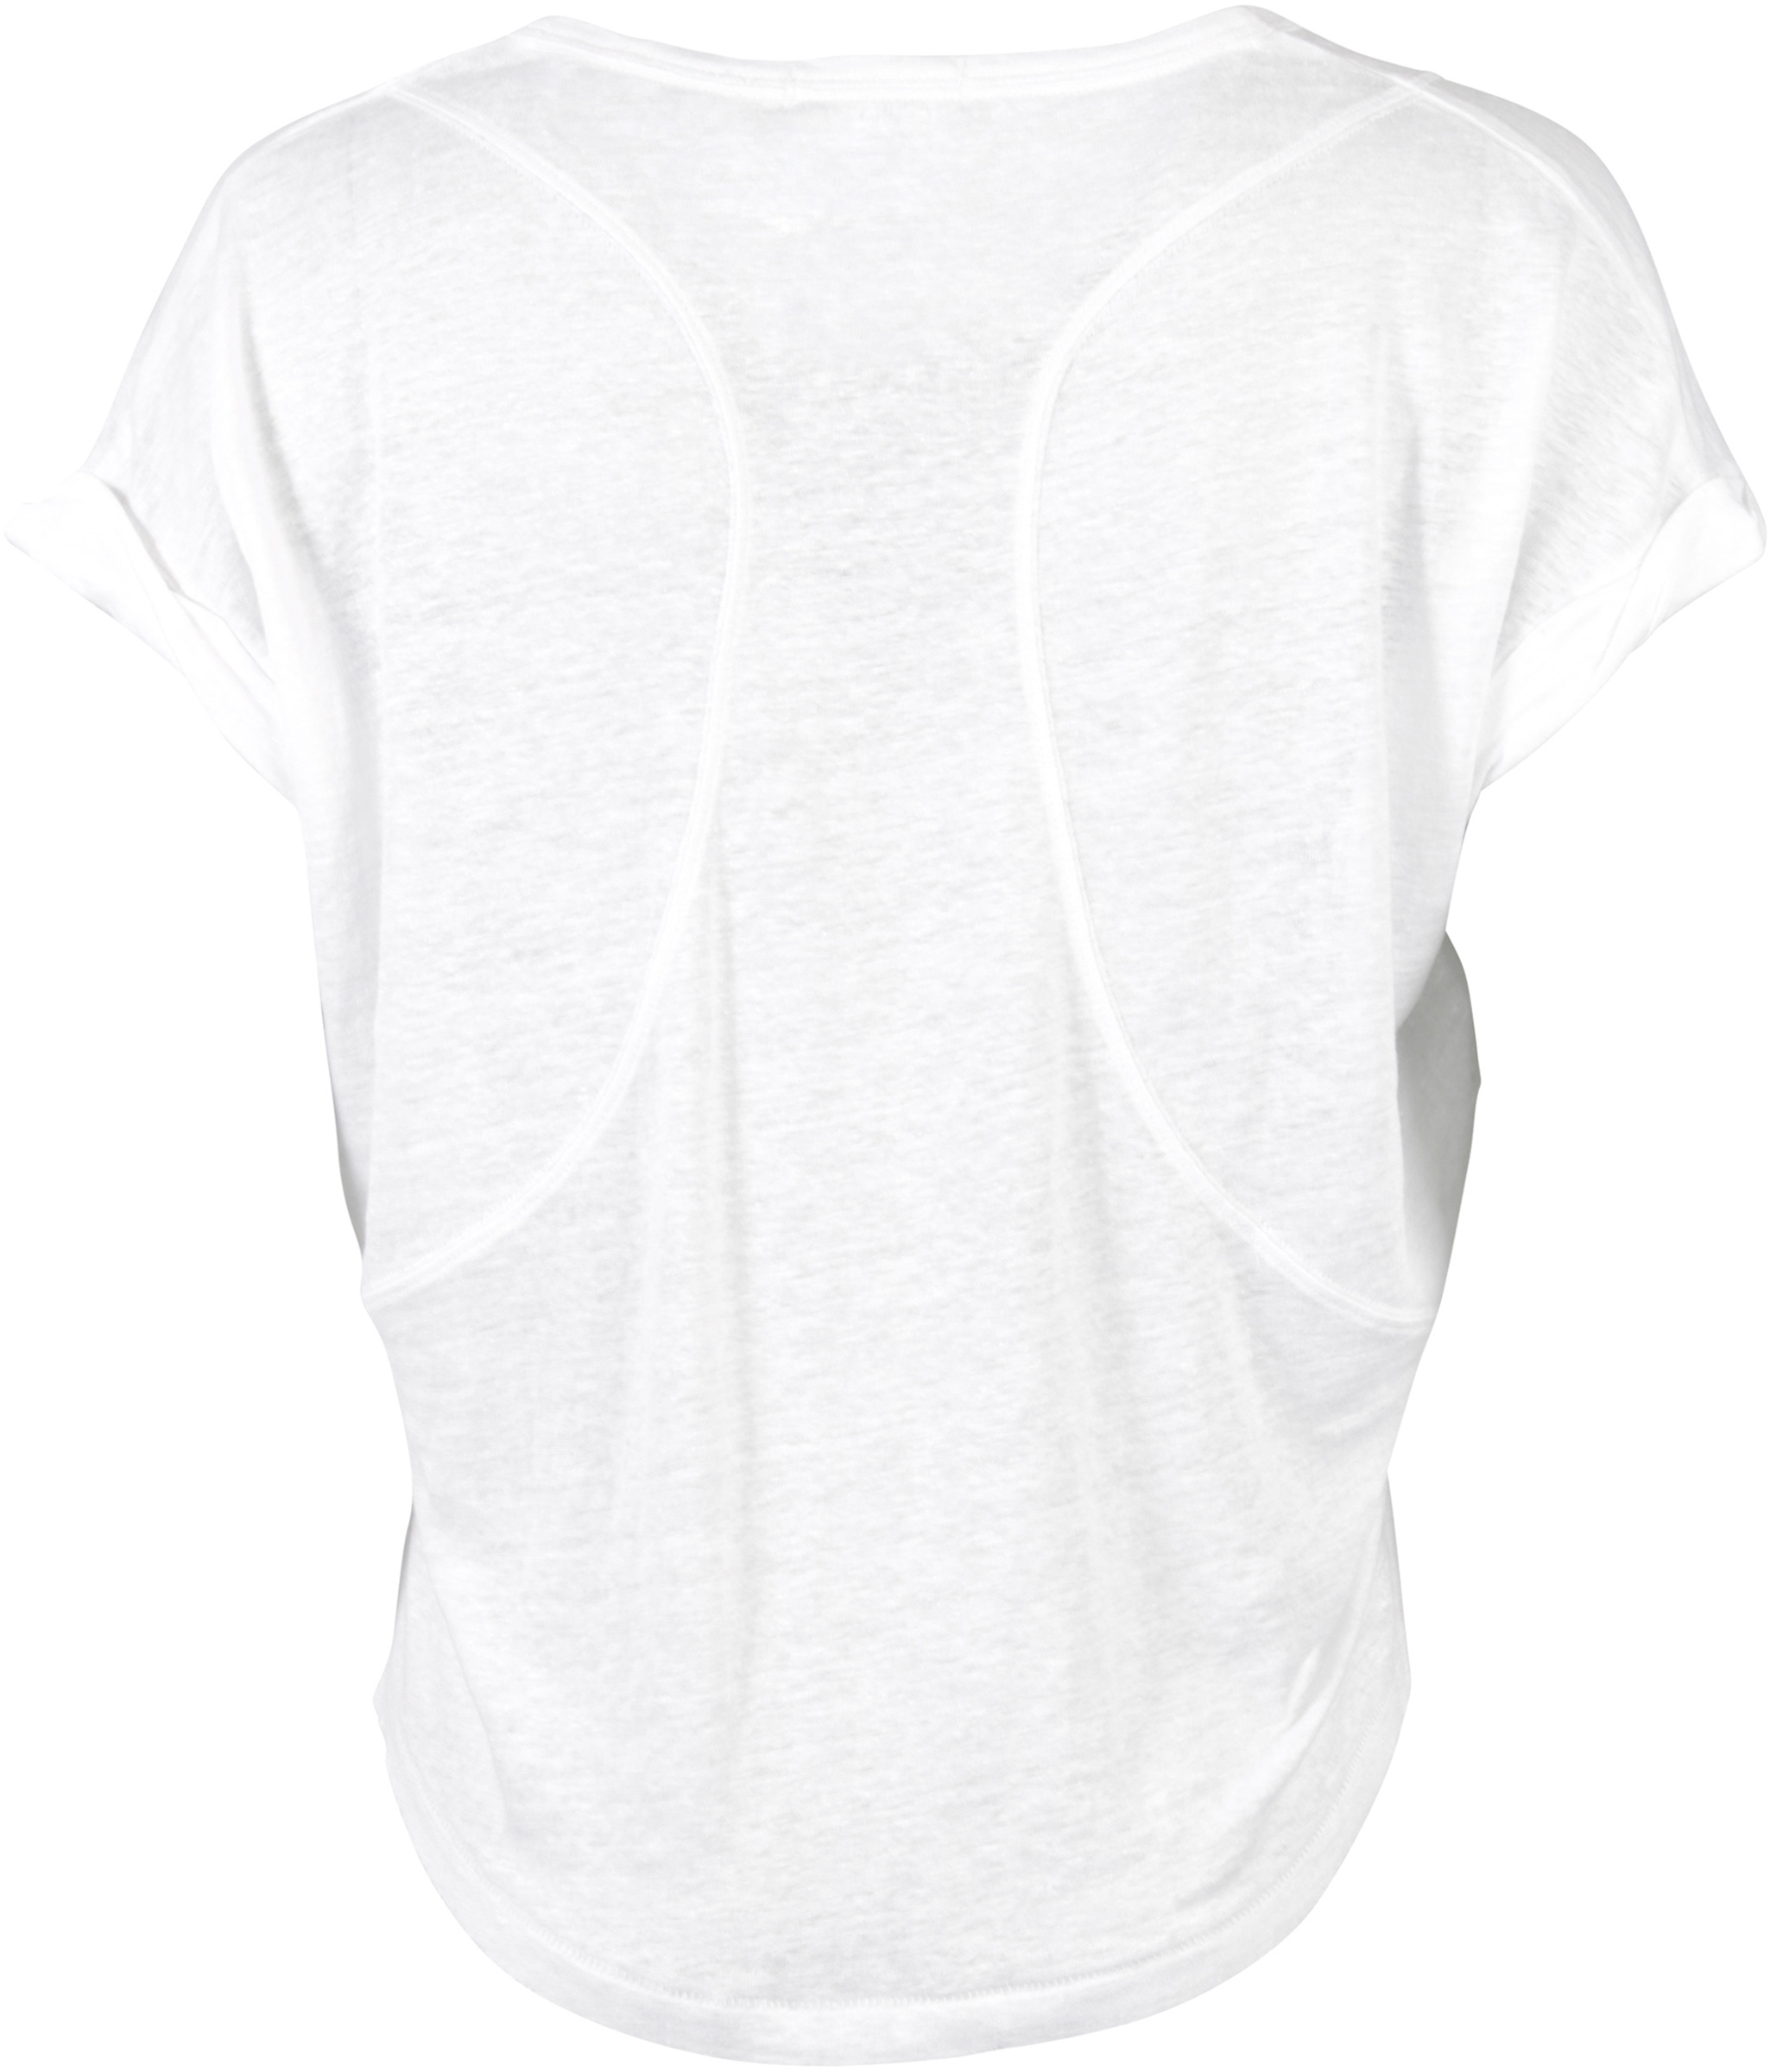 Rag & Bone T-Shirt Rundhals weiss XS